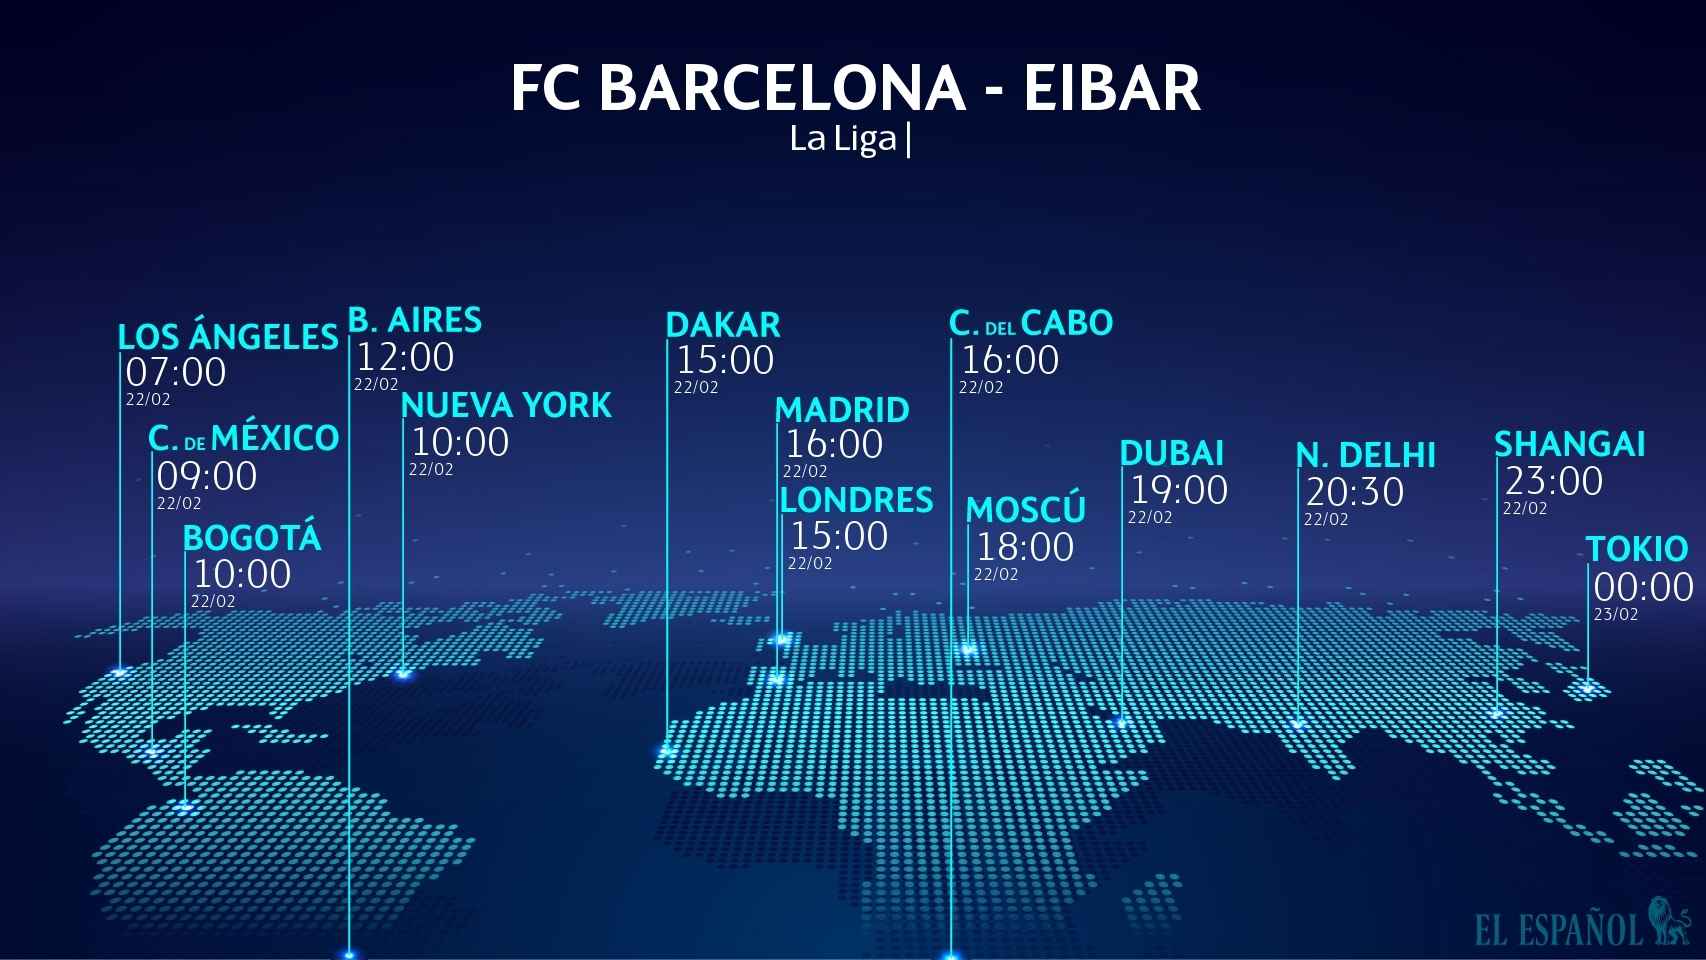 Sigue el FC Barcelona - Eibar